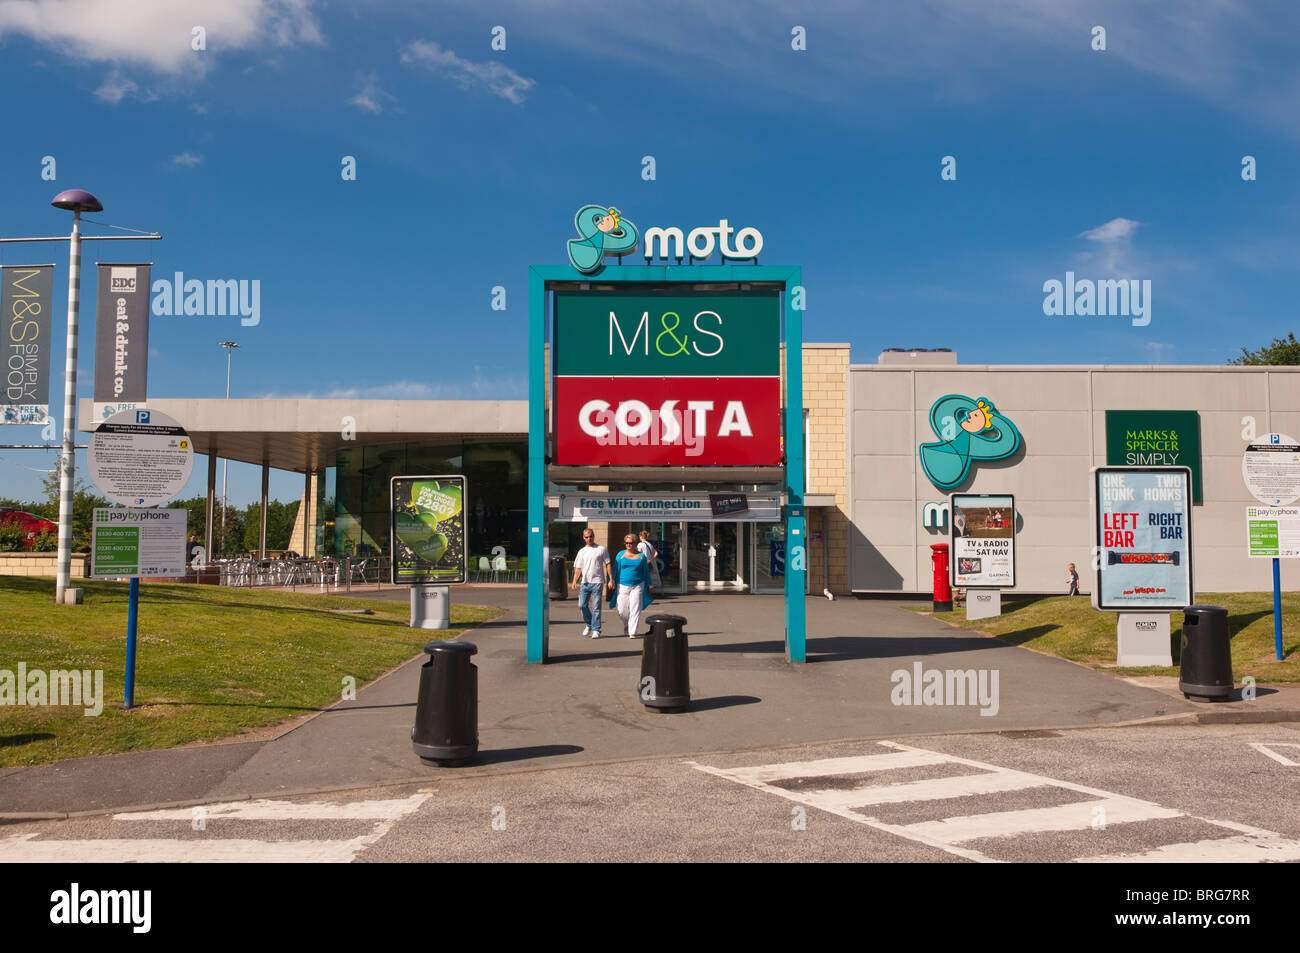 Ein Moto Dienste stoppen mit M & S und Costa Kaffee auf einer Autobahn in England, Großbritannien, Vereinigtes Königreich Stockfoto